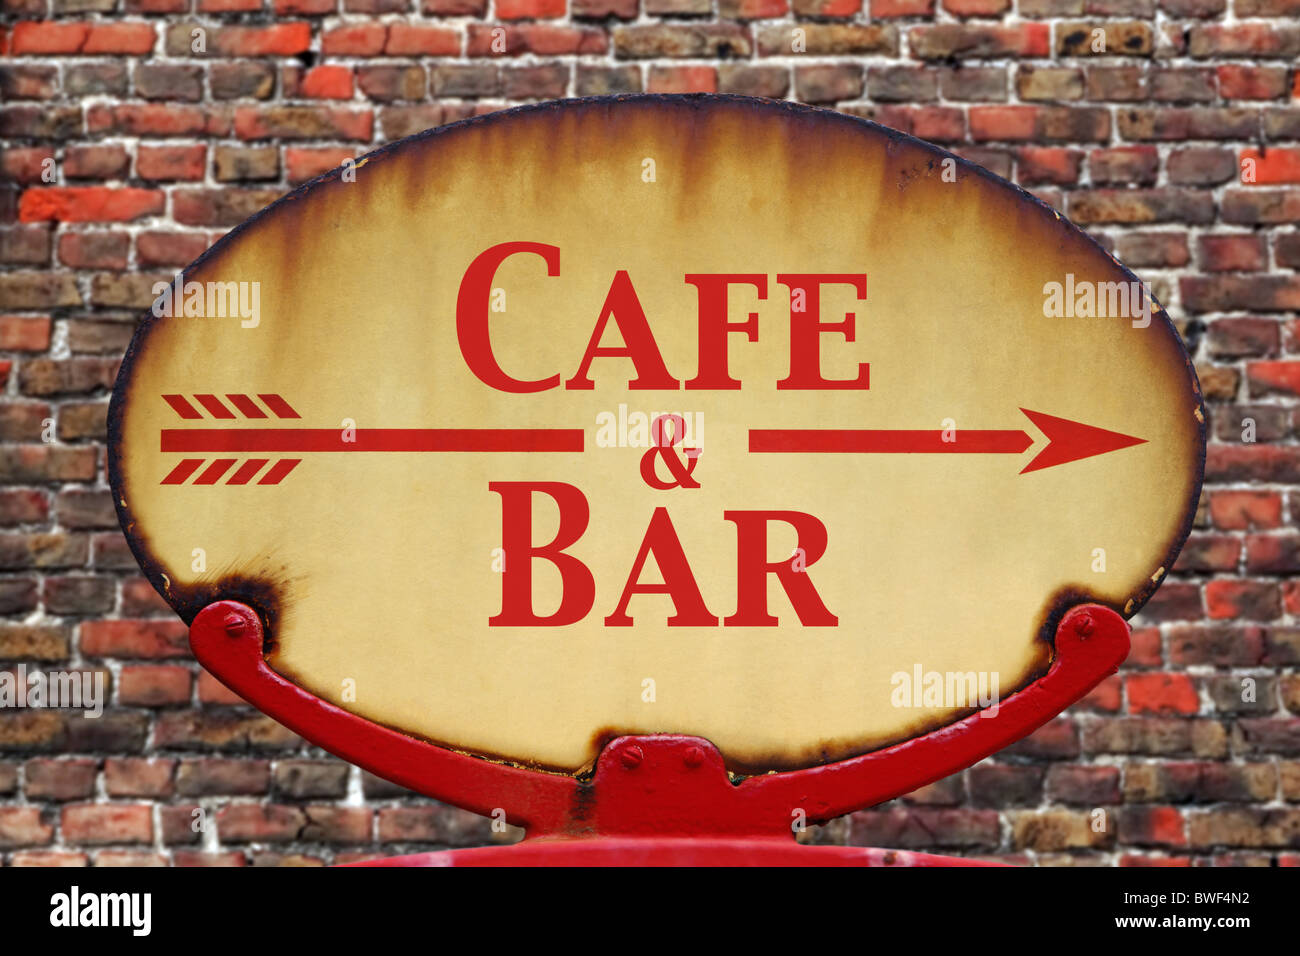 Un vieux rétro rouillé arrow sign avec le texte Cafe and Bar Banque D'Images